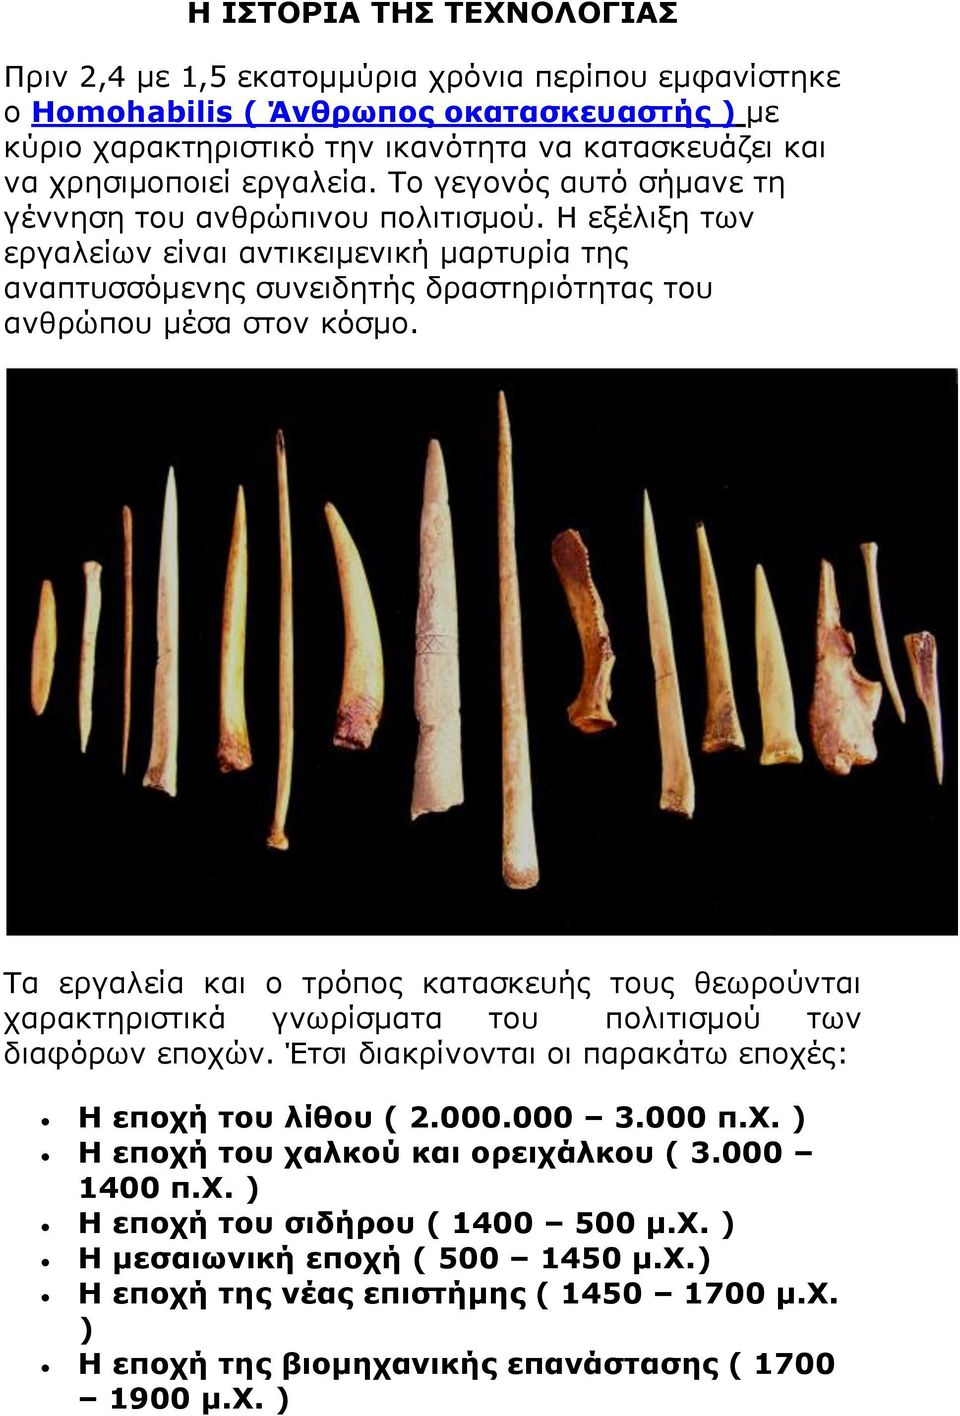 Τα εργαλεία και ο τρόπος κατασκευής τους θεωρούνται χαρακτηριστικά γνωρίσματα του πολιτισμού των διαφόρων εποχών. Έτσι διακρίνονται οι παρακάτω εποχές: Η εποχή του λίθου ( 2.000.000 3.000 π.χ. ) Η εποχή του χαλκού και ορειχάλκου ( 3.